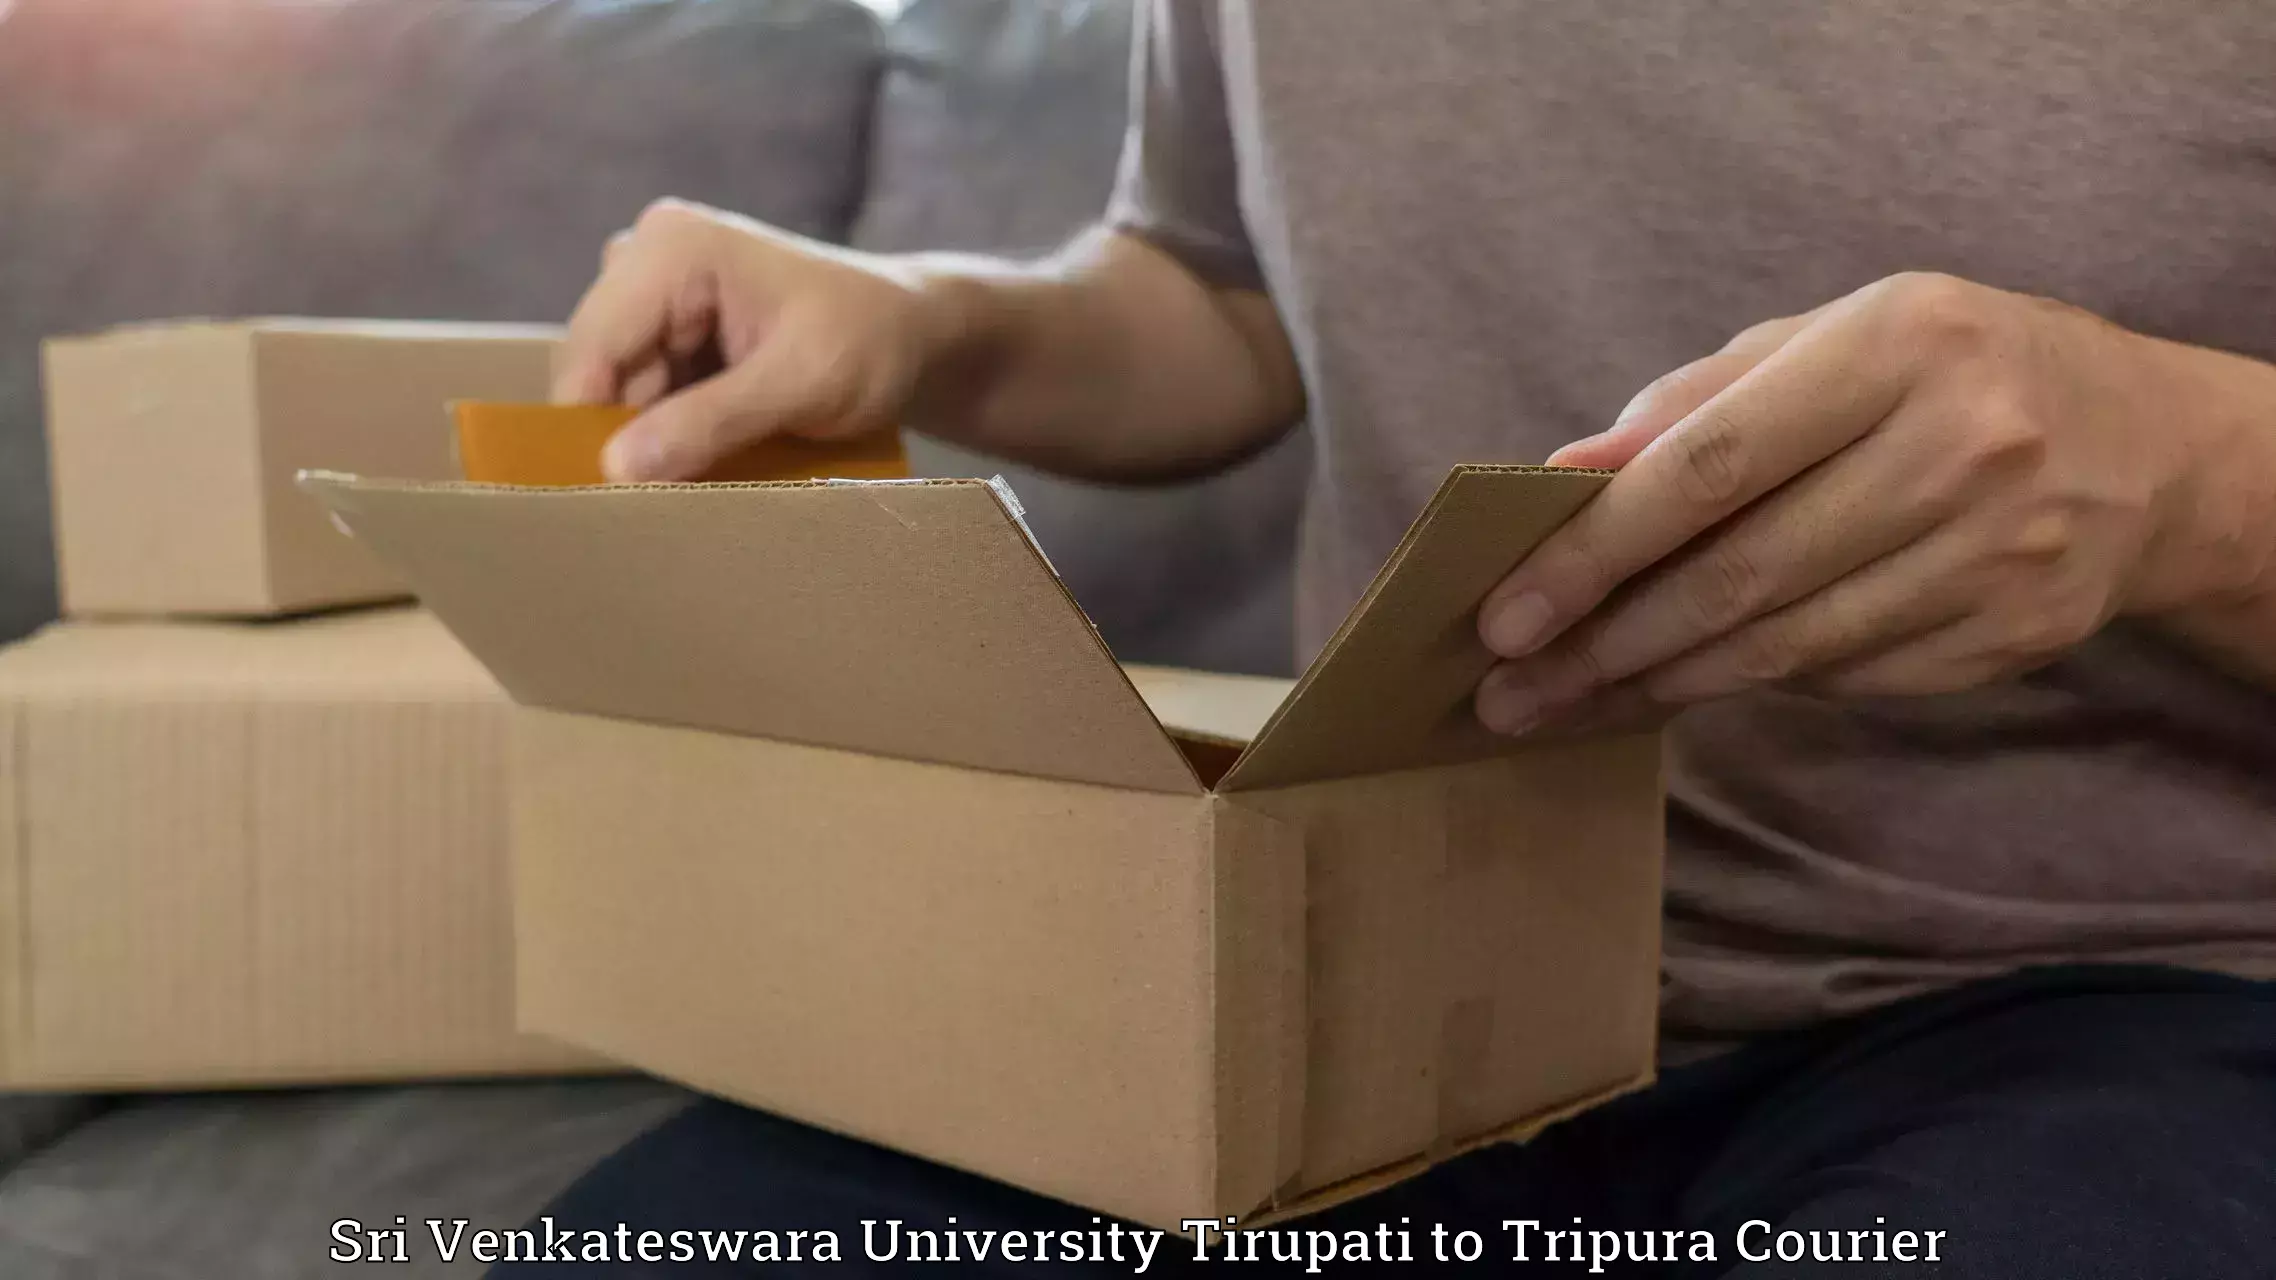 Local delivery service in Sri Venkateswara University Tirupati to Udaipur Tripura